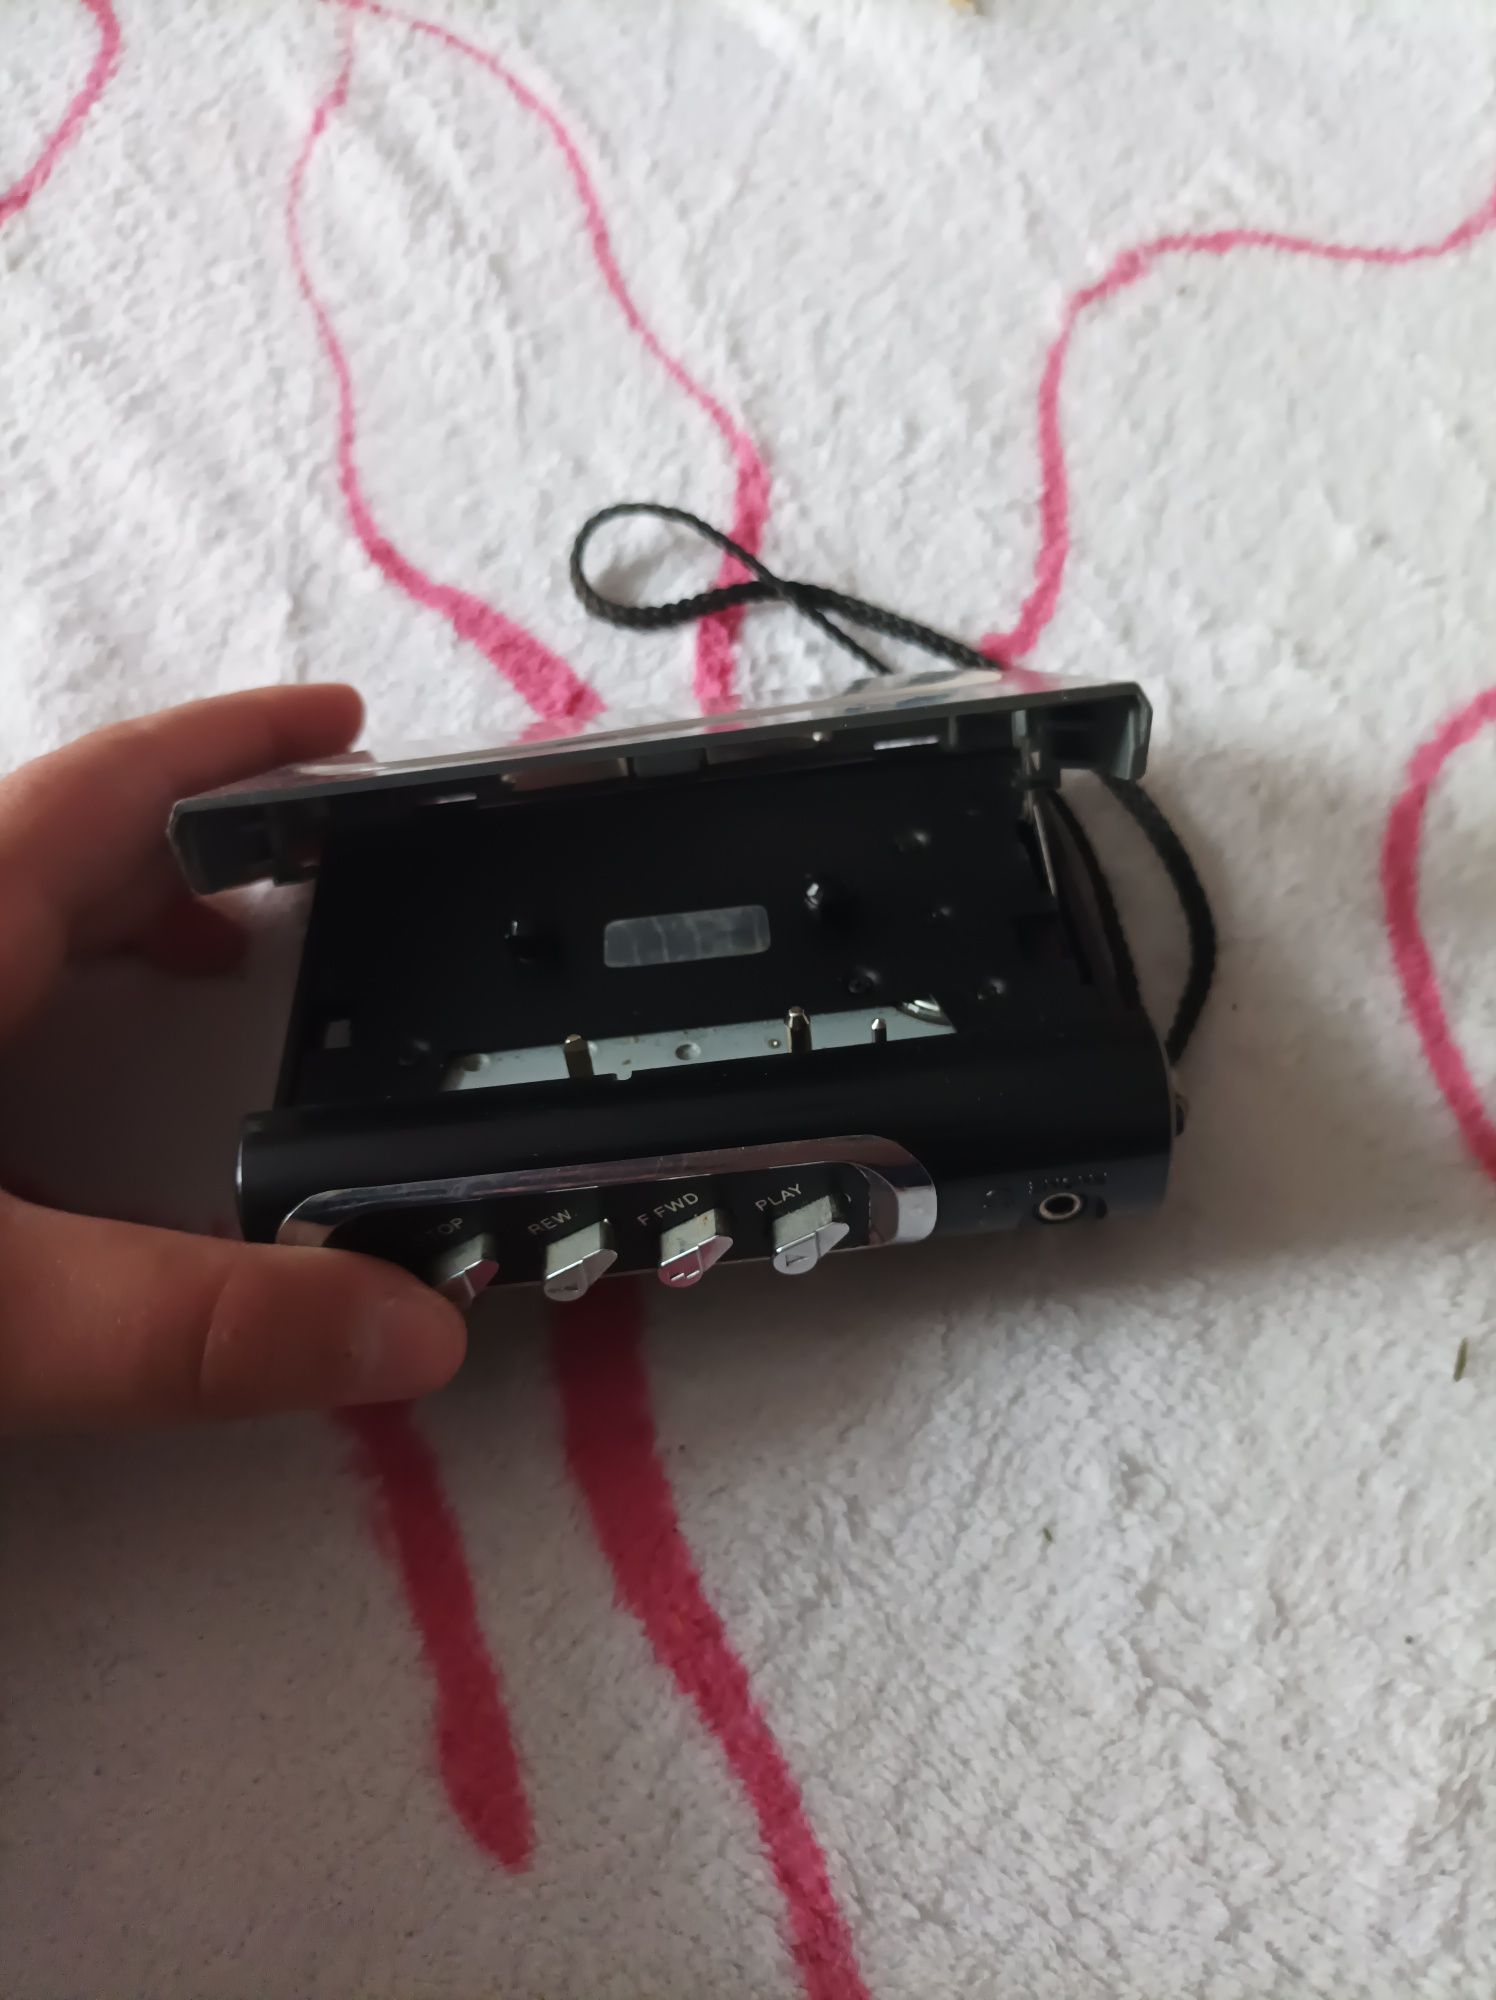 Vând cassette player beatboy80 ‼️URGENT‼️